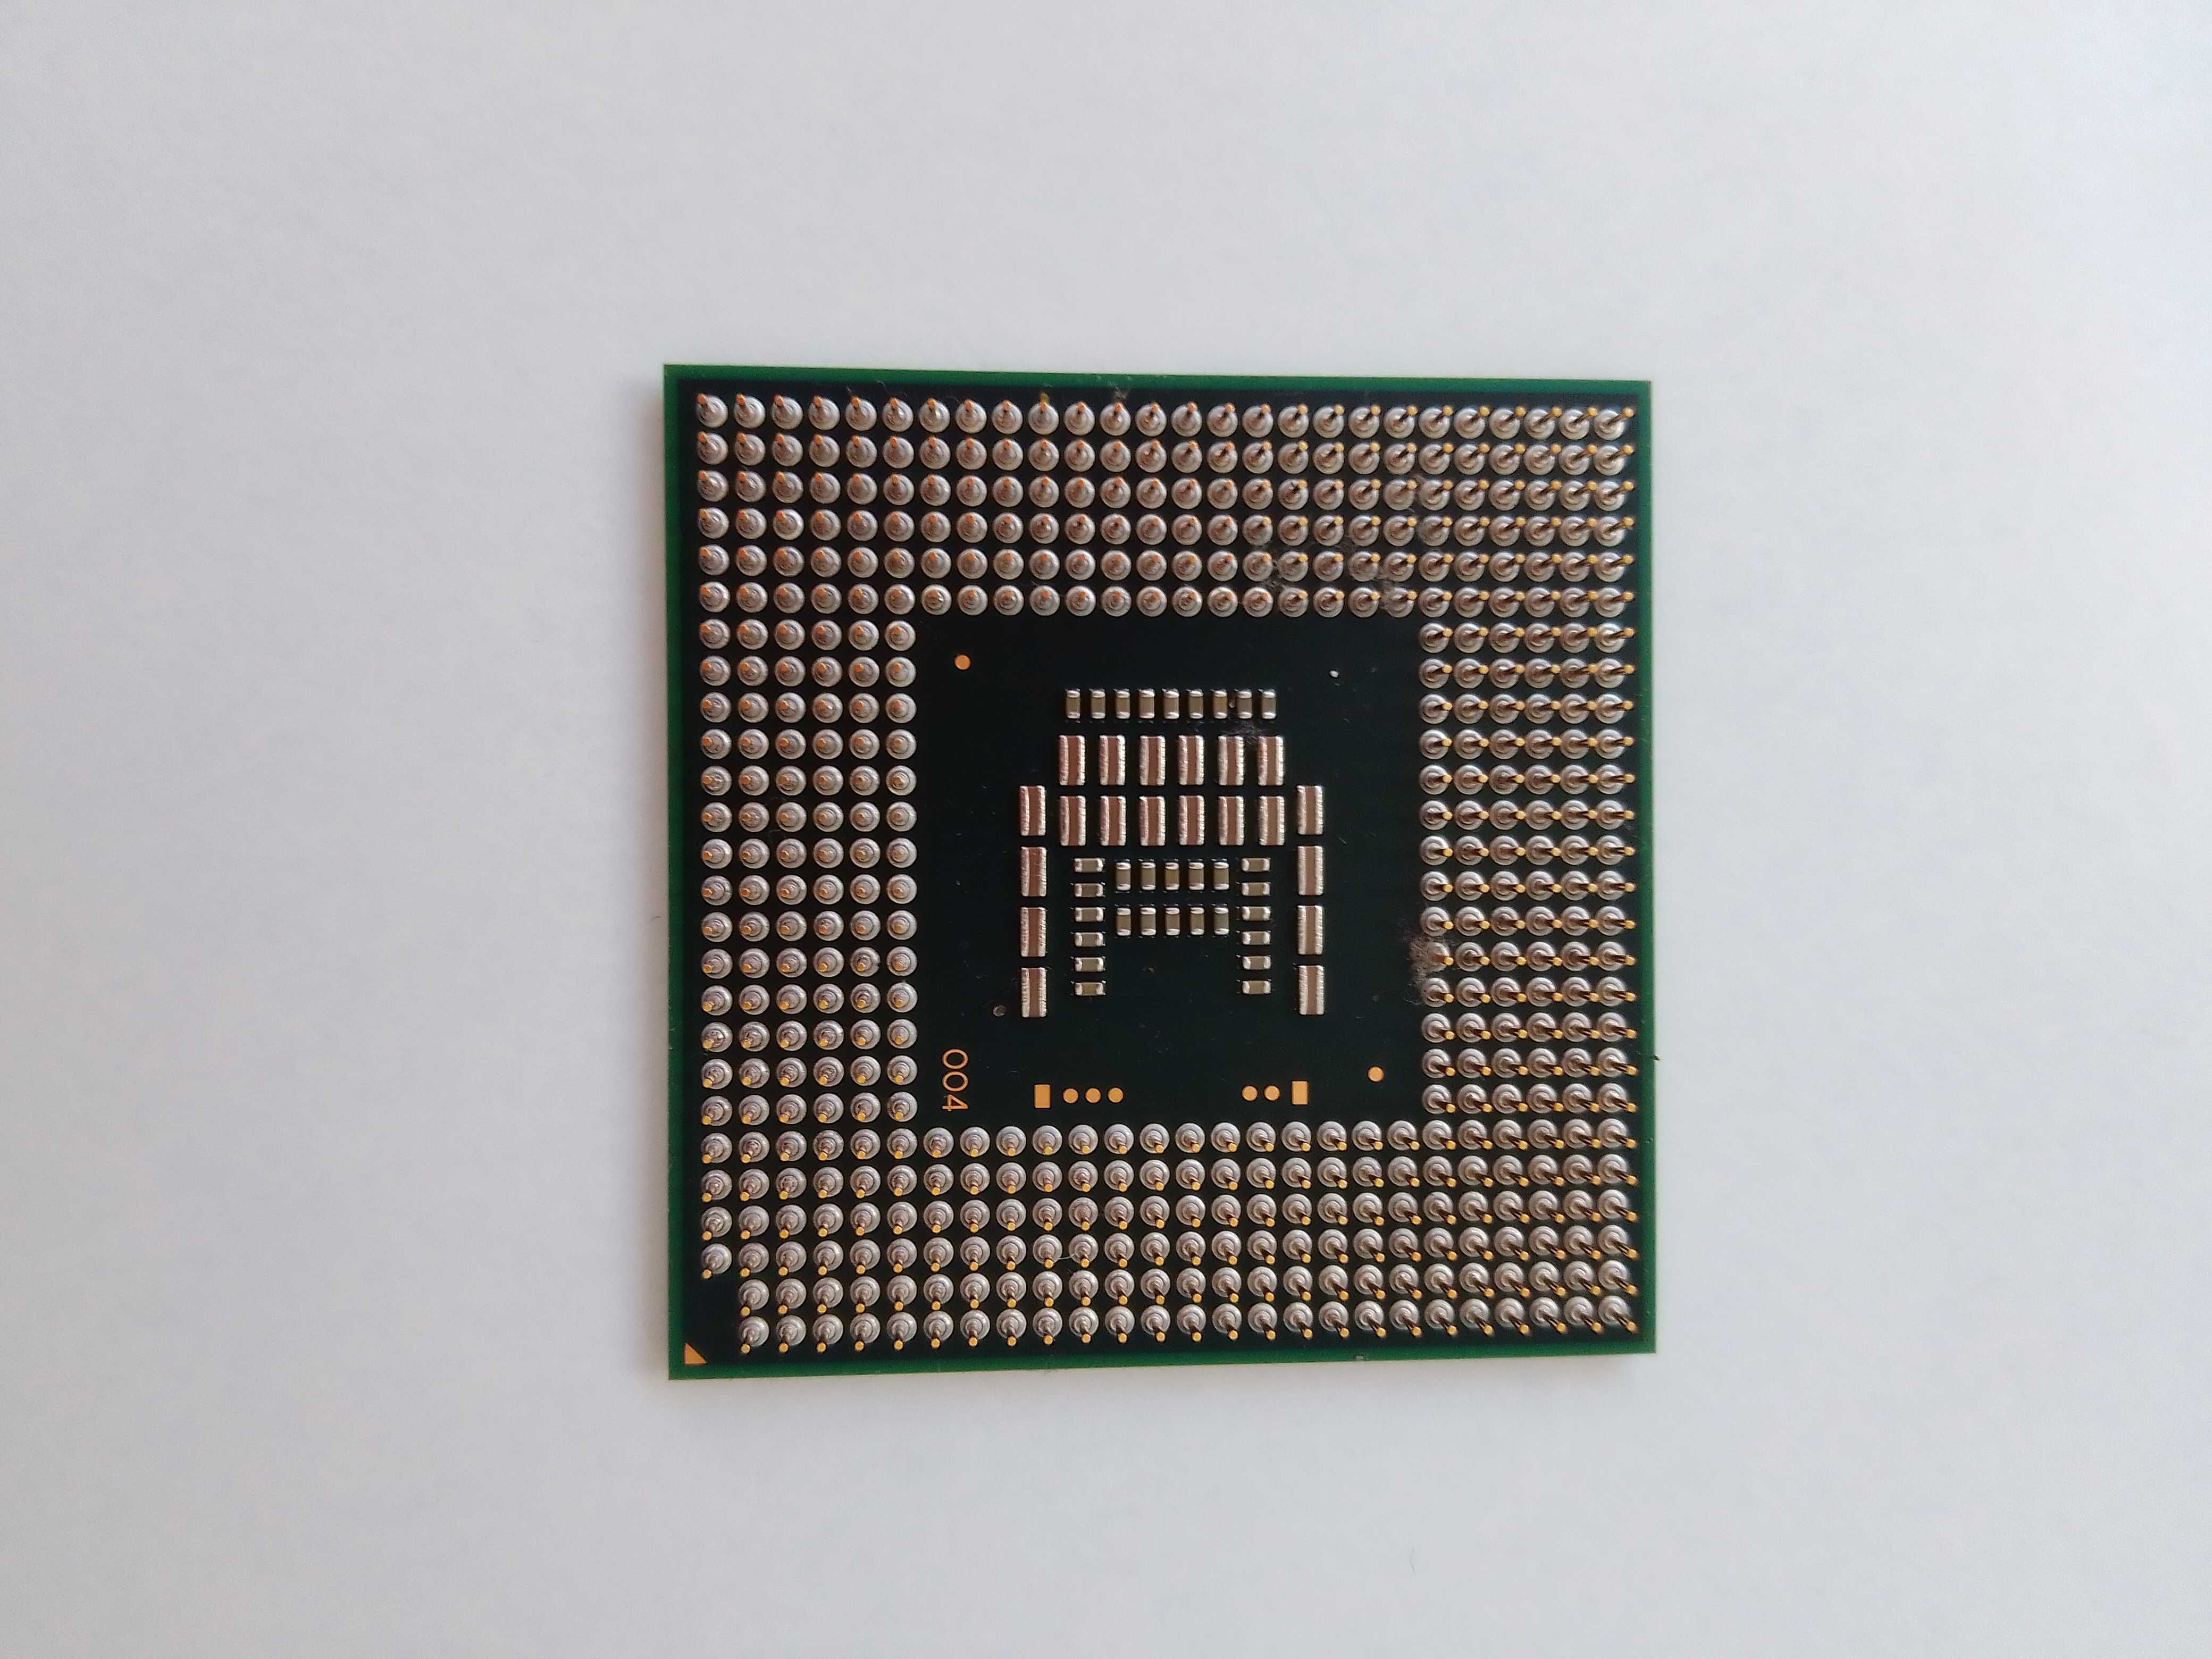 Procesor Intel '06 E916B152 SLGJN AW80577T4200 emachines E725 (002313)